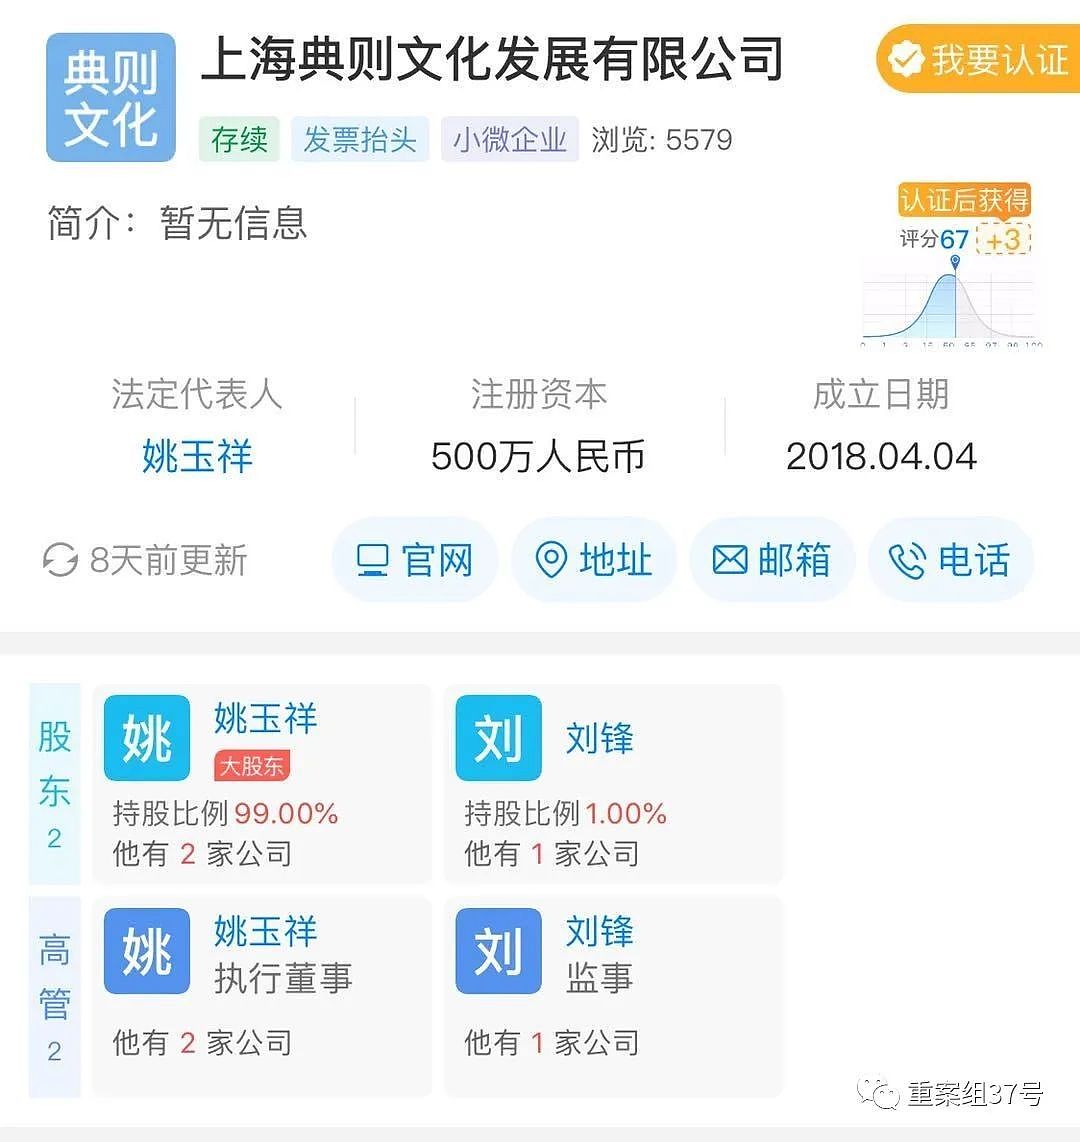 上海典则文化发展有限公司天眼查页面截图。